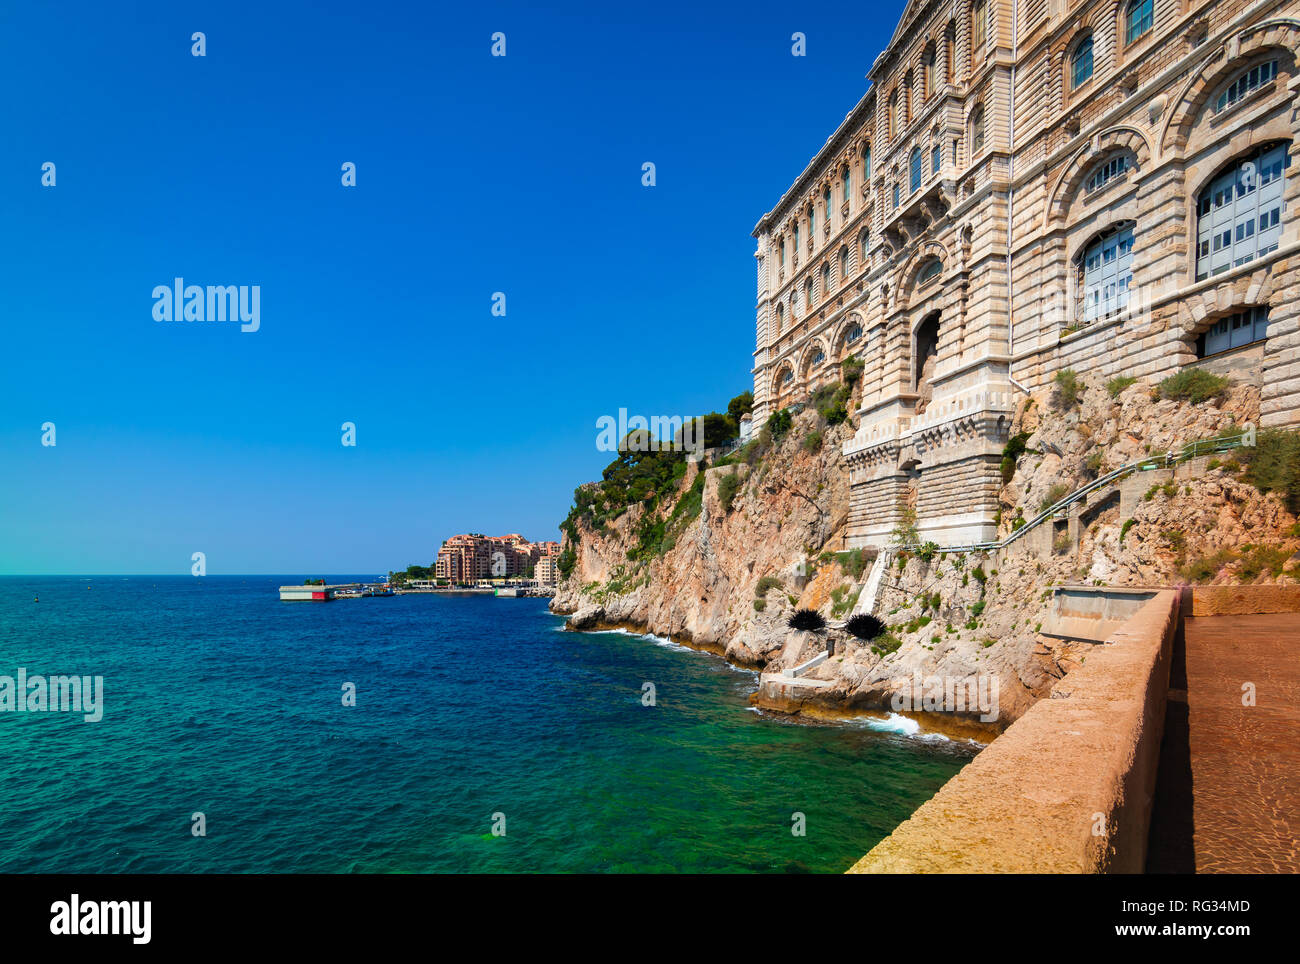 Oceanographic museum along the coast of Monaco, Monte Carlo. Stock Photo